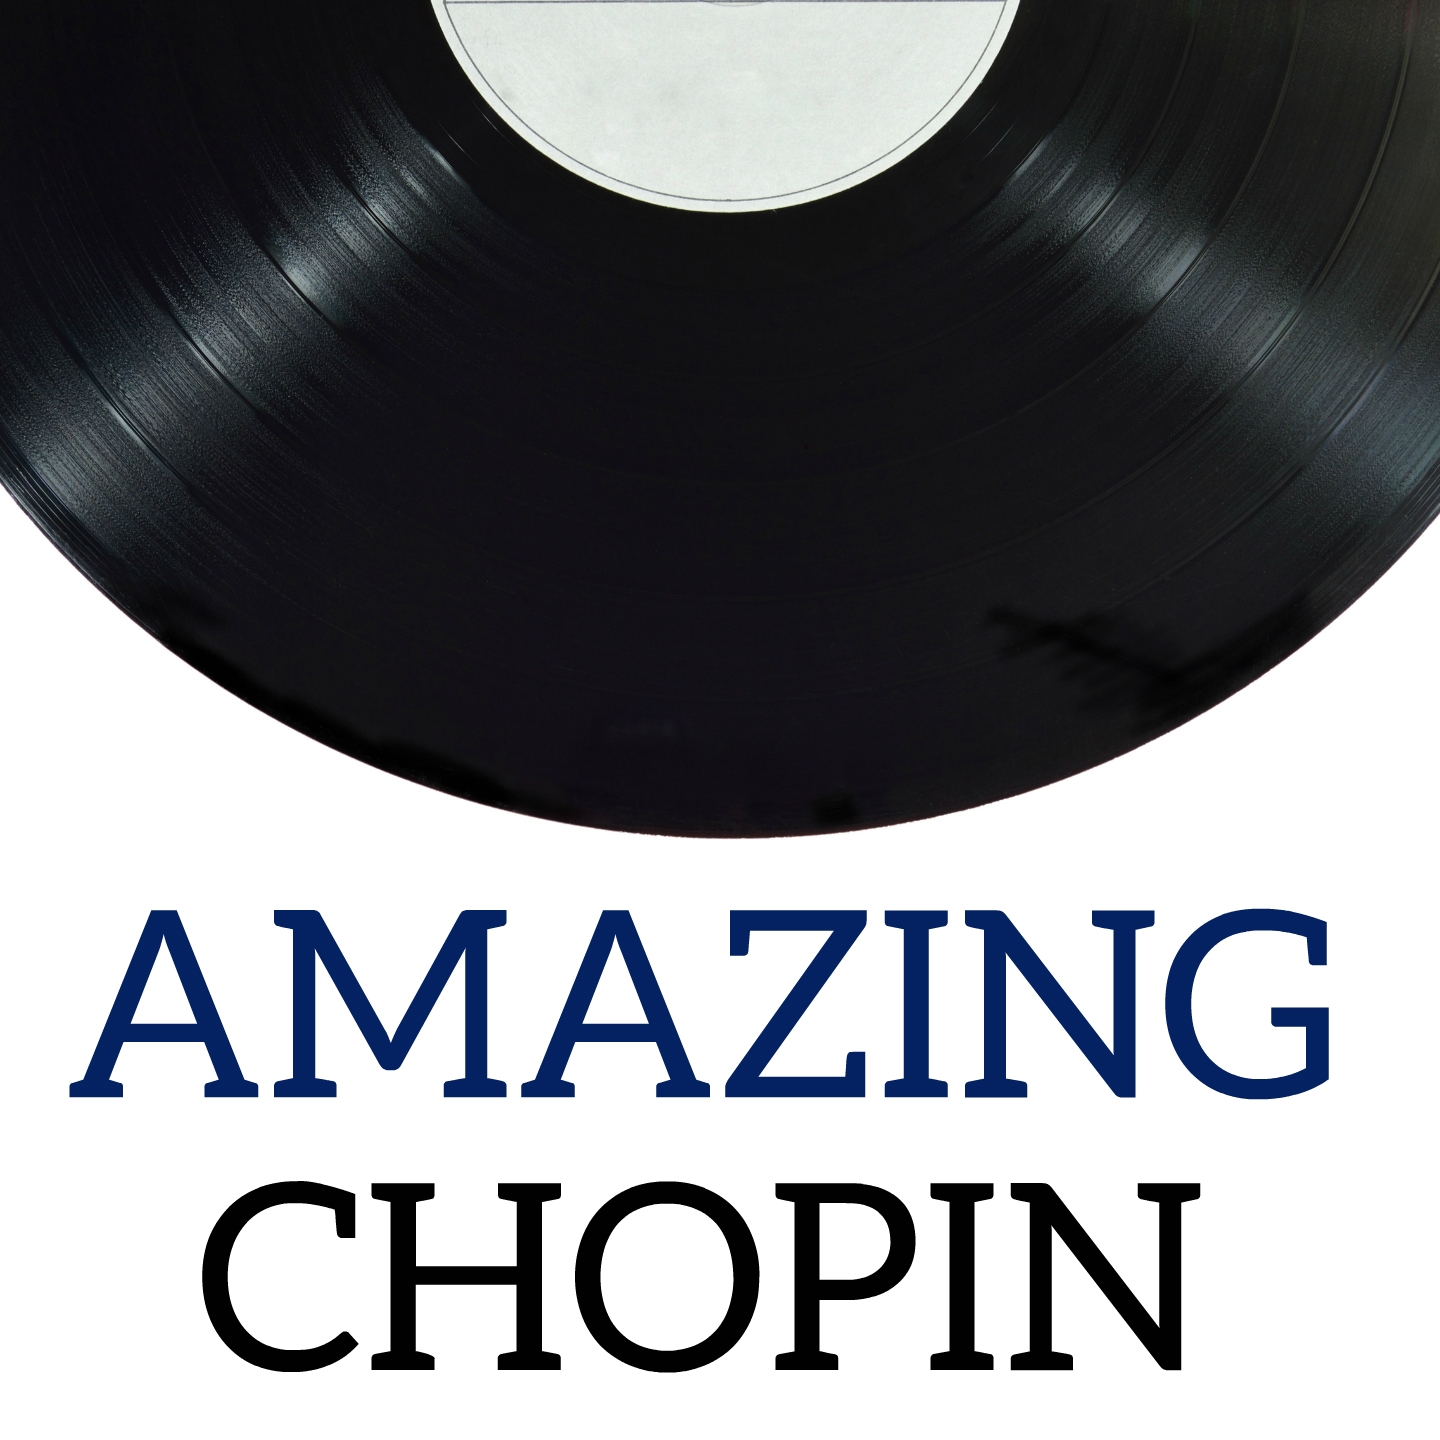 Amazing Chopin